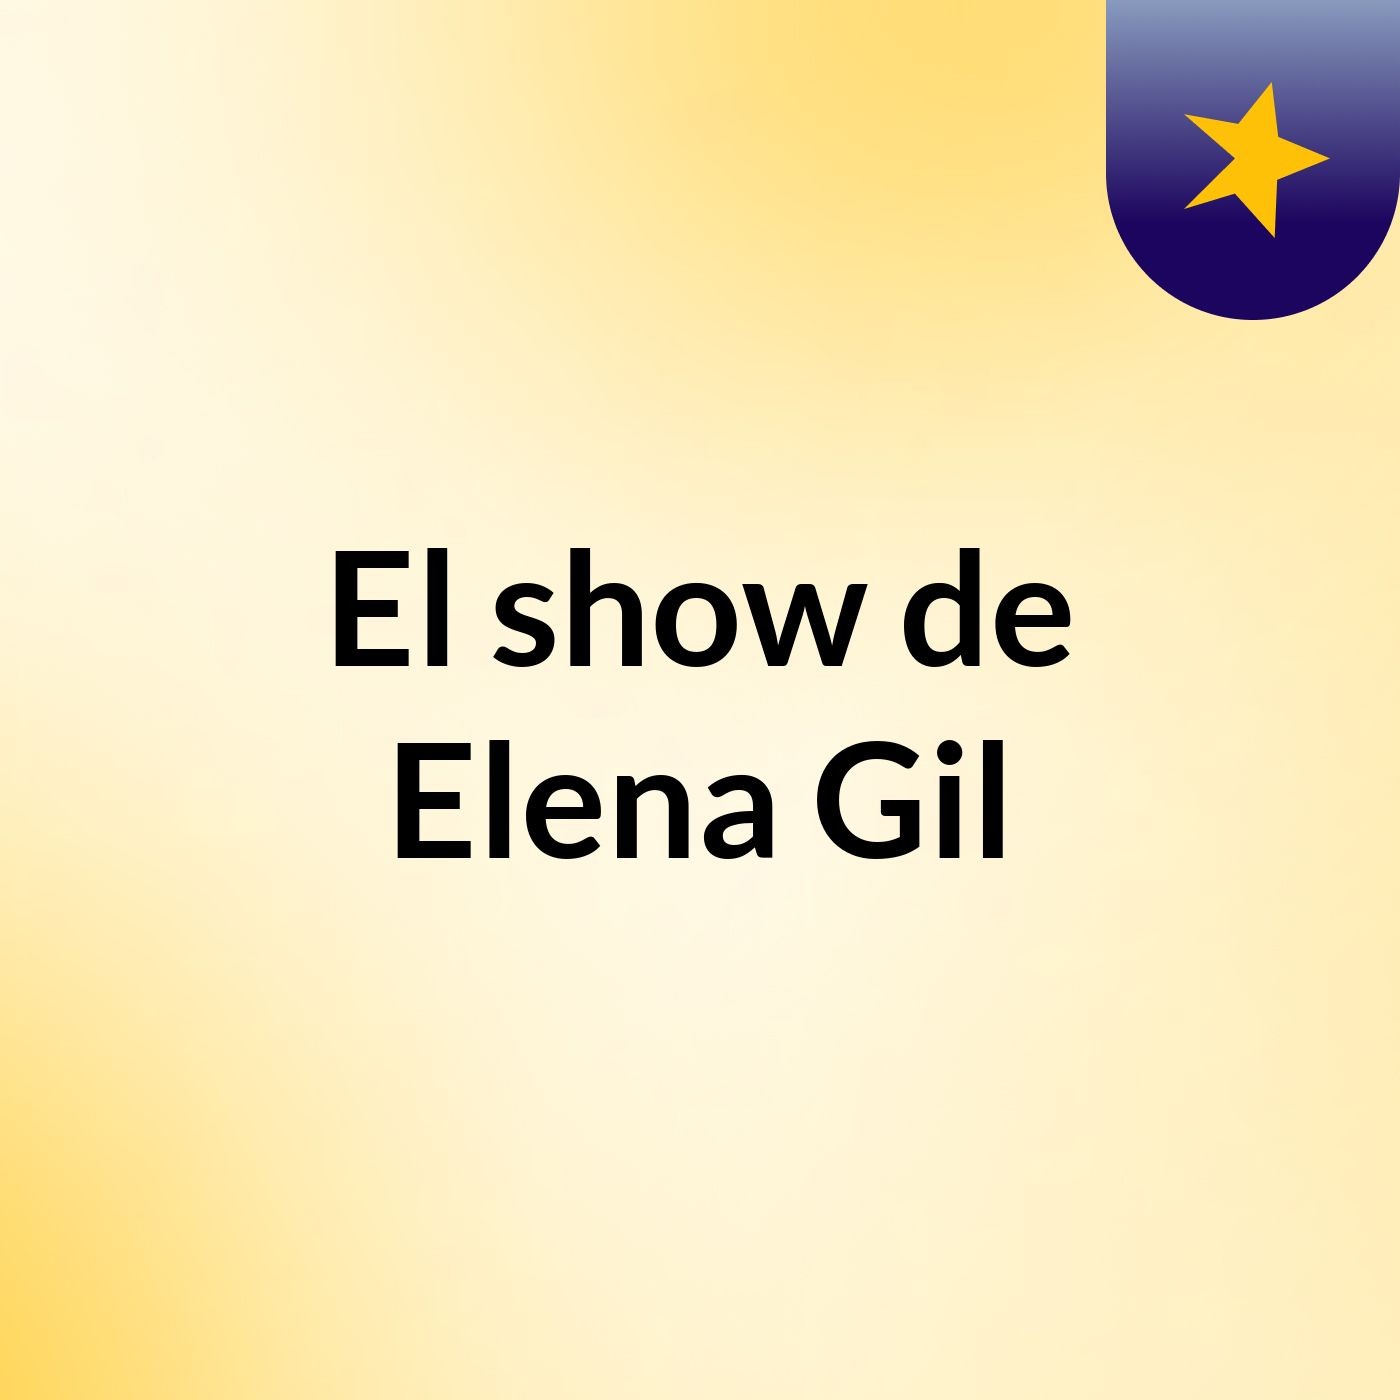 El show de Elena Gil